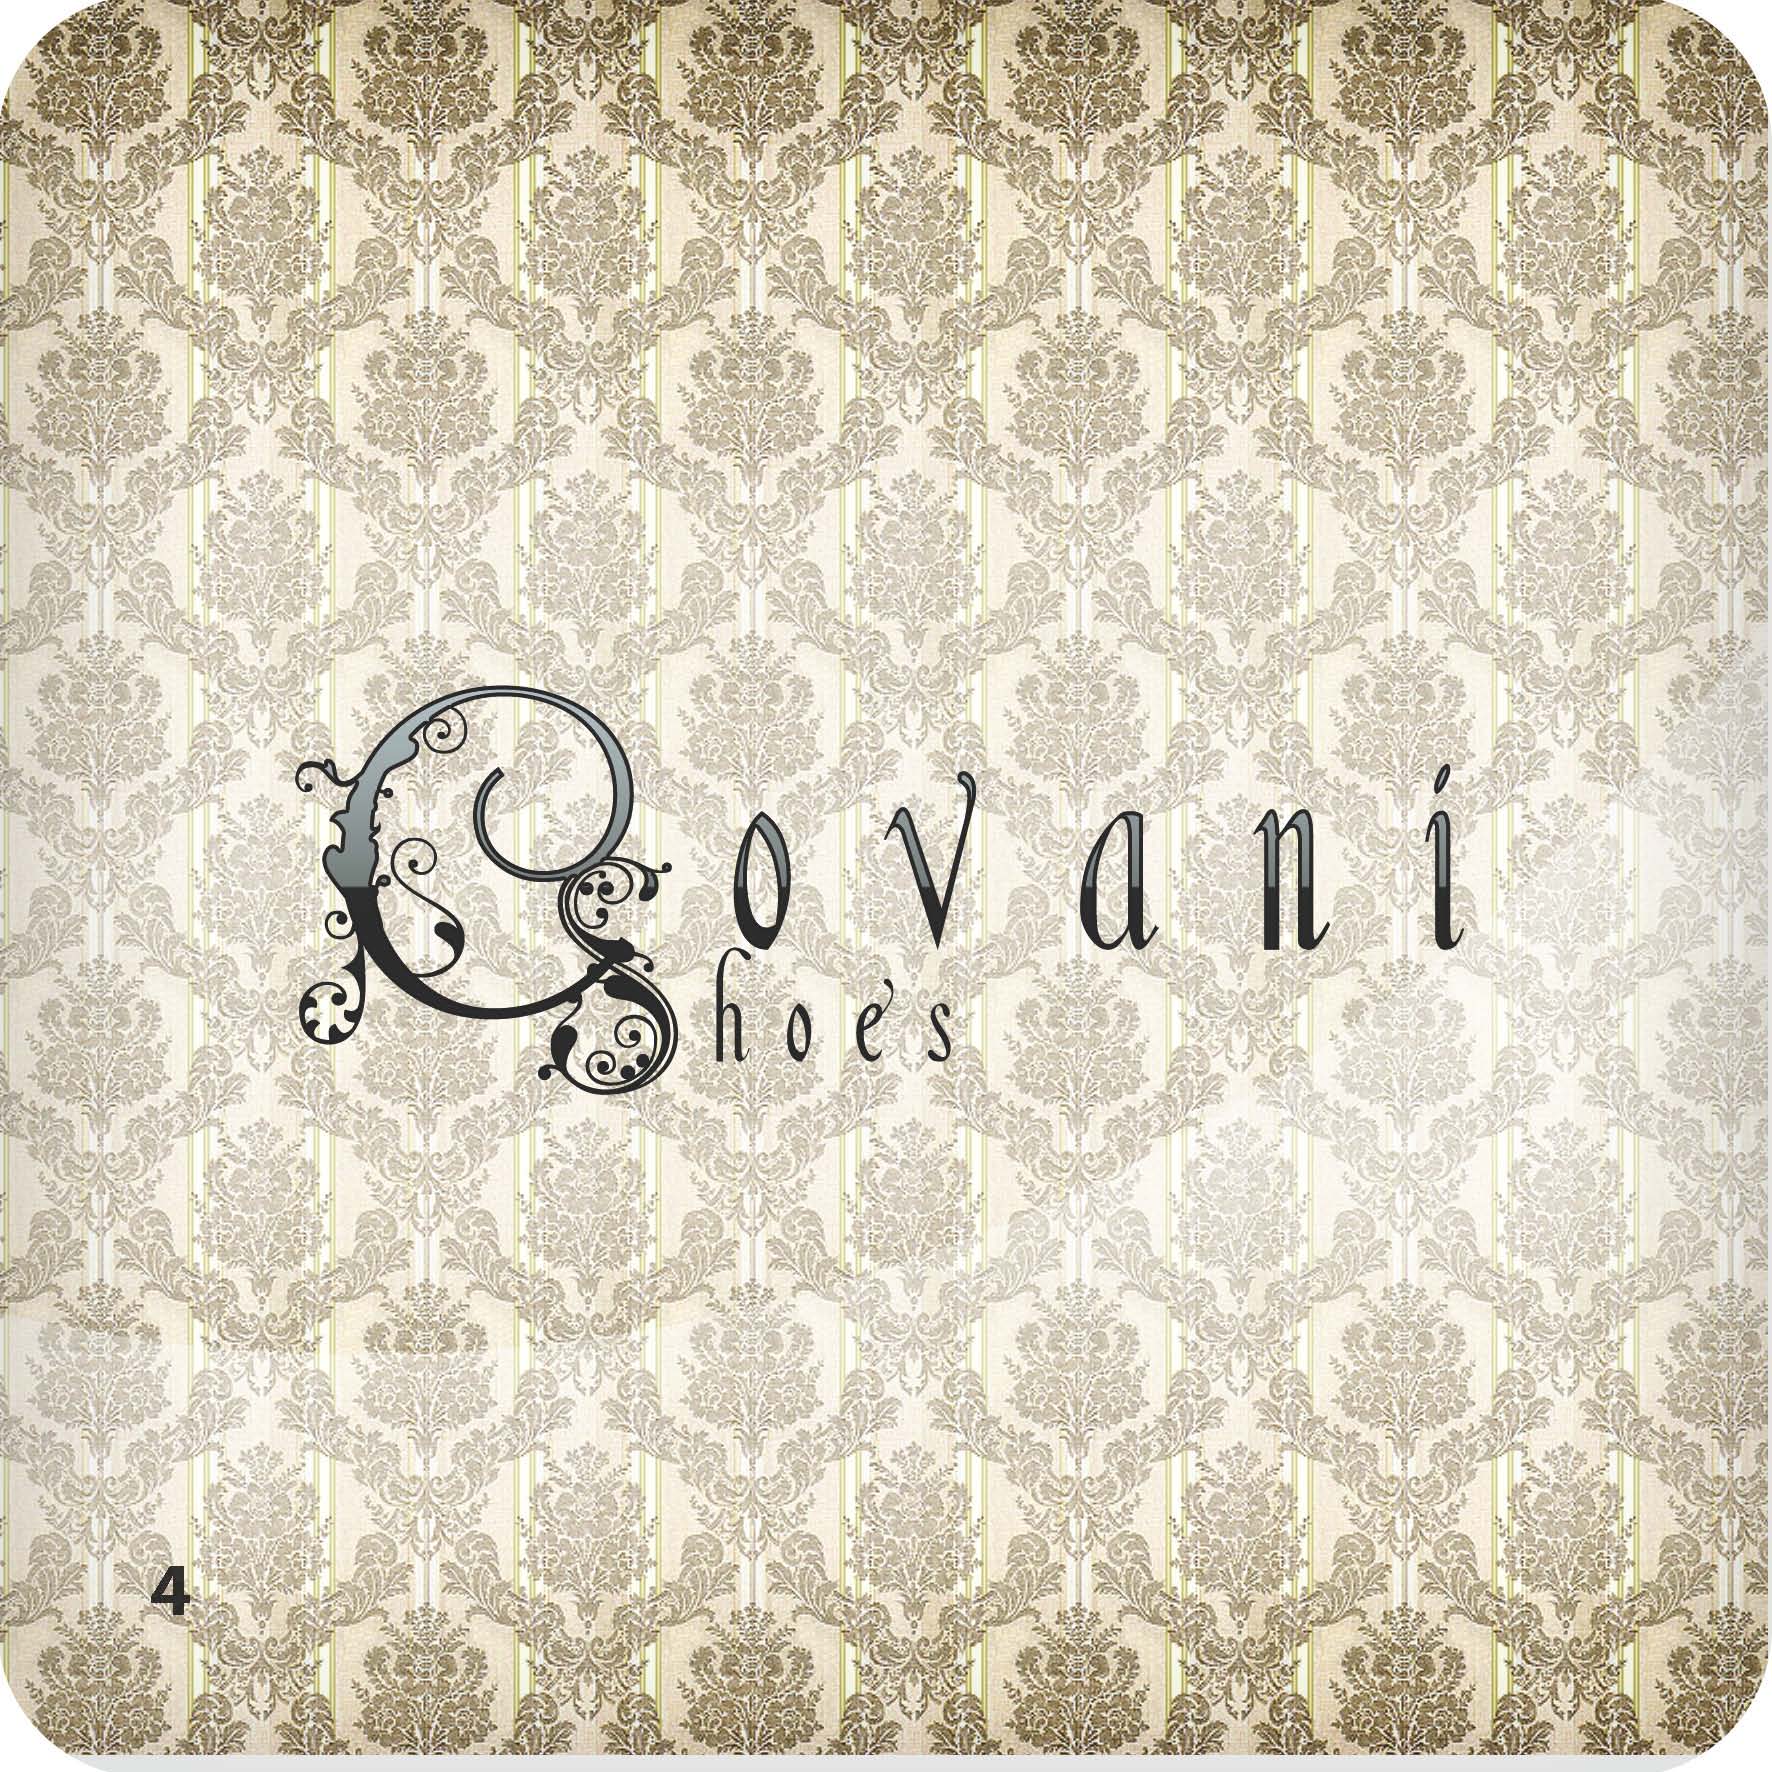 Концепт логотипа Covani